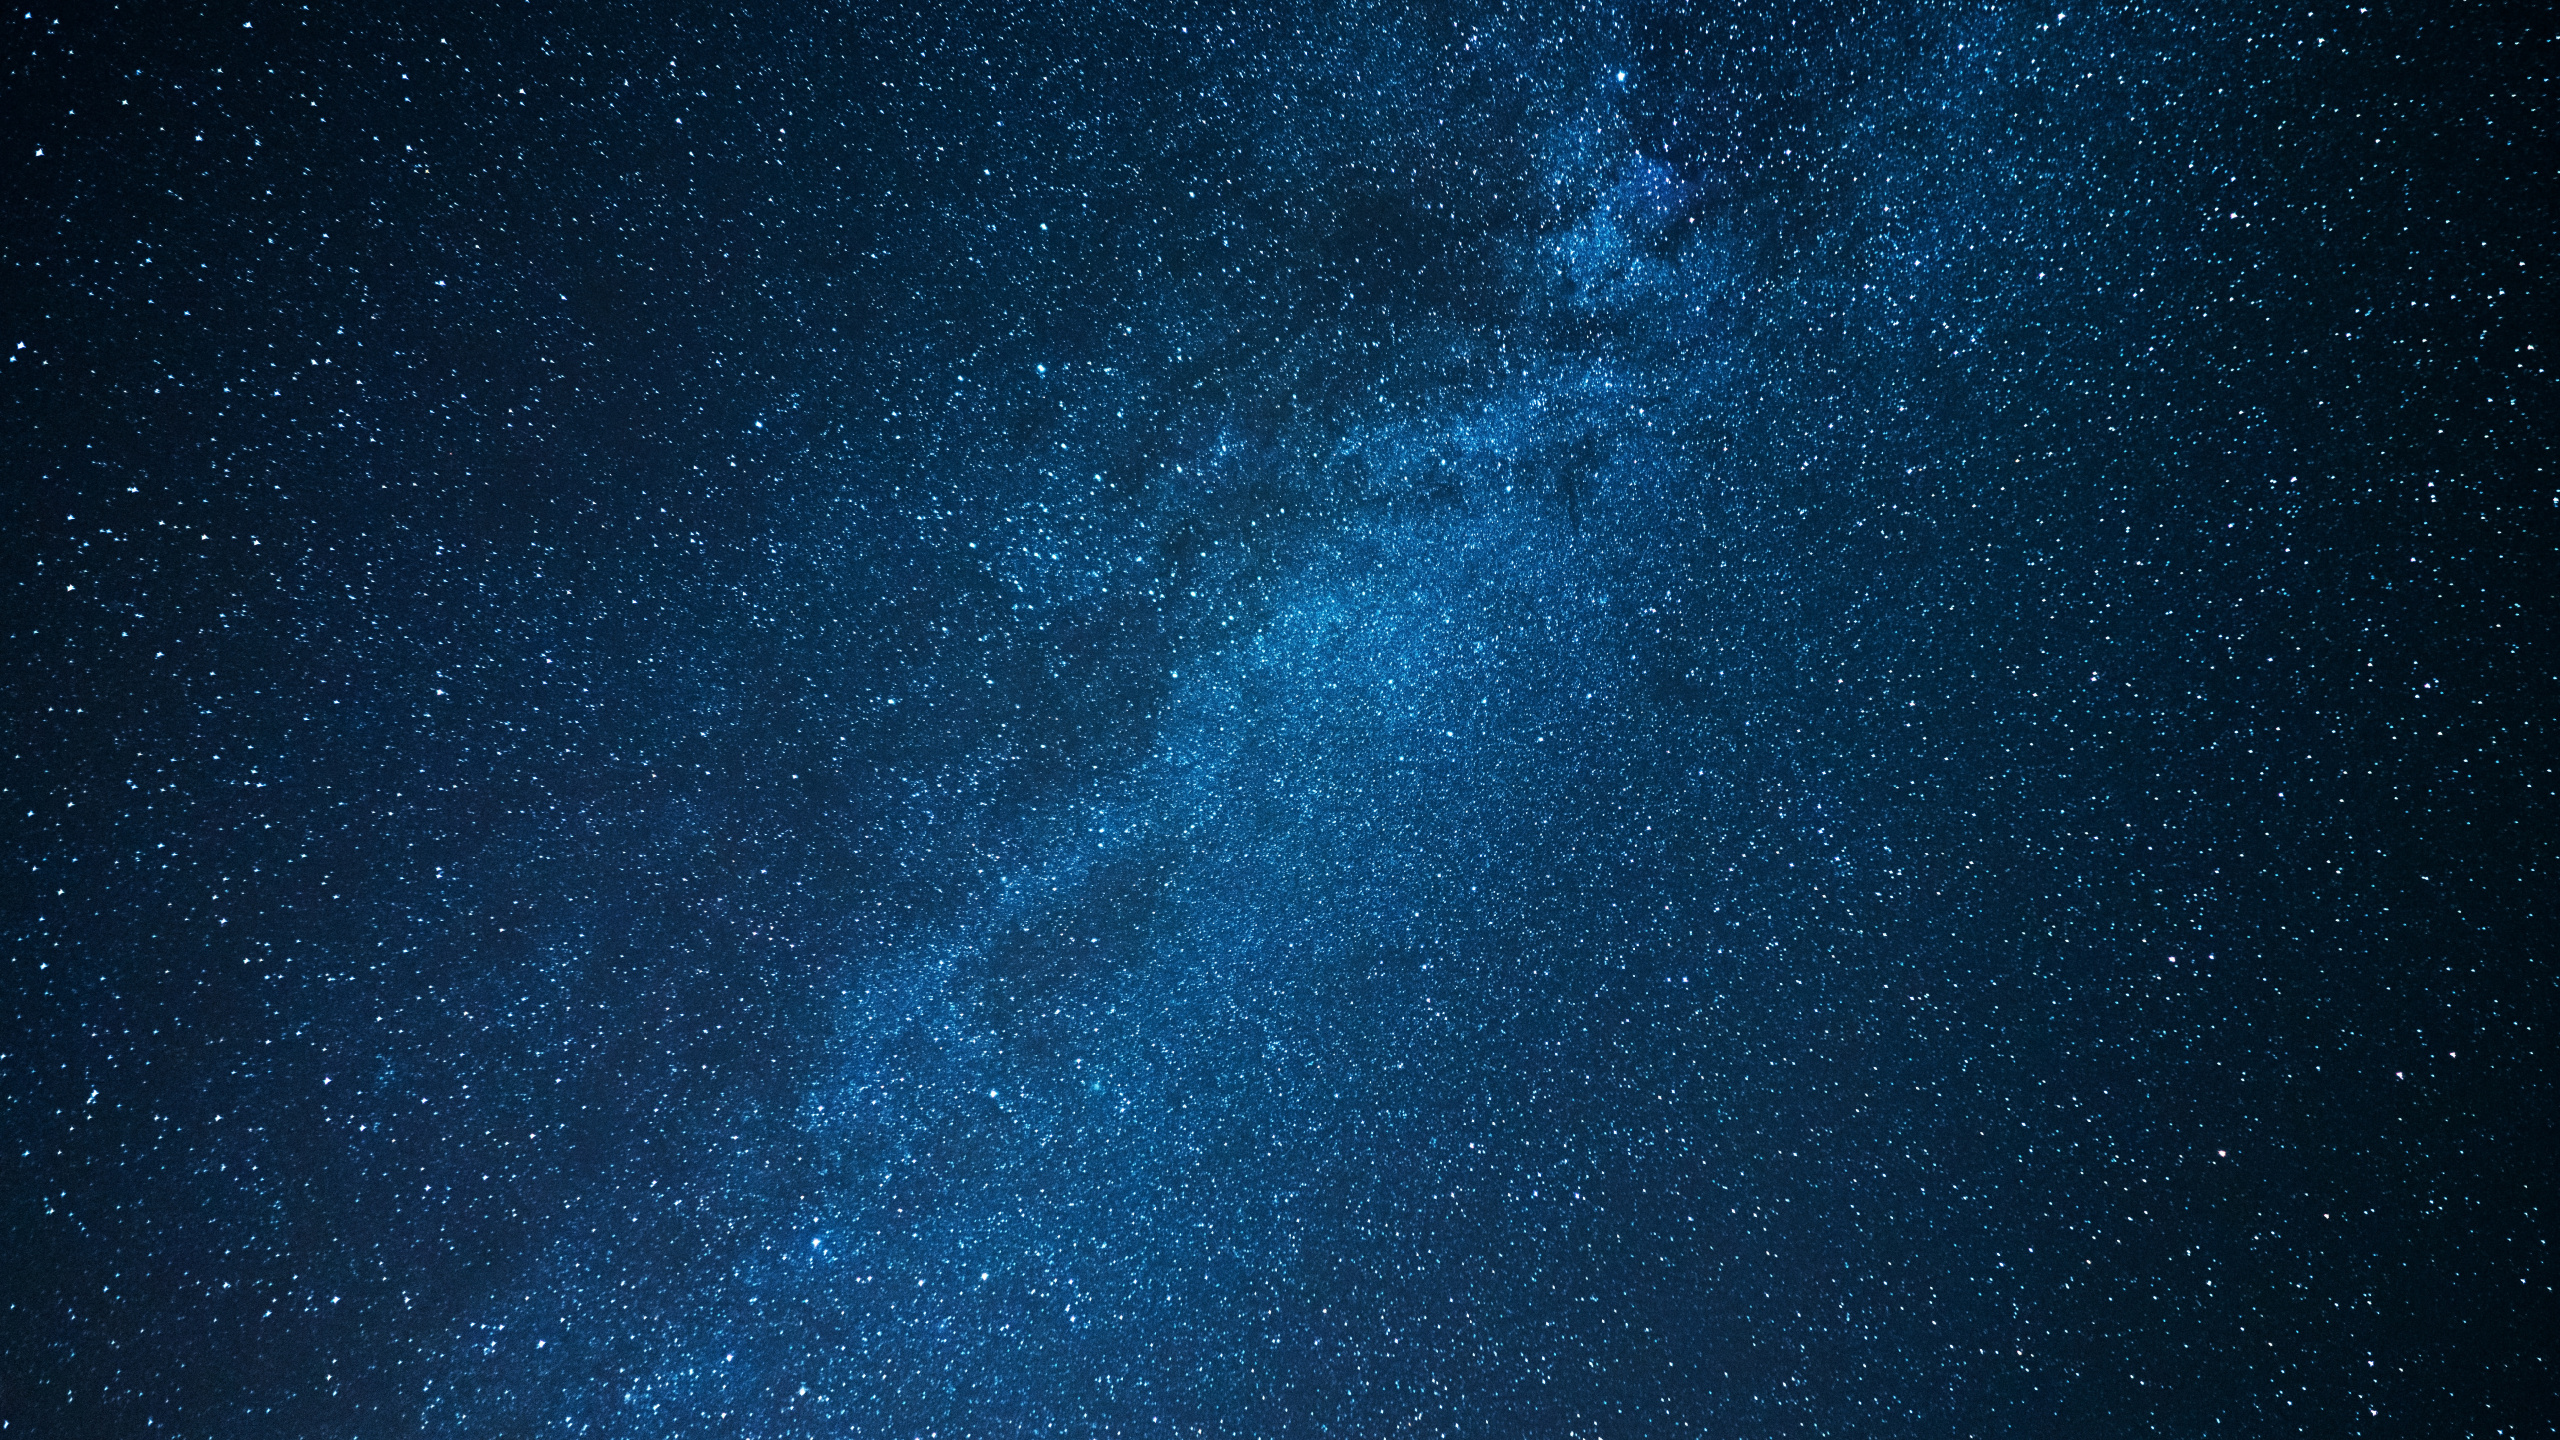 Cielo Estrellado Azul y Blanco. Wallpaper in 2560x1440 Resolution